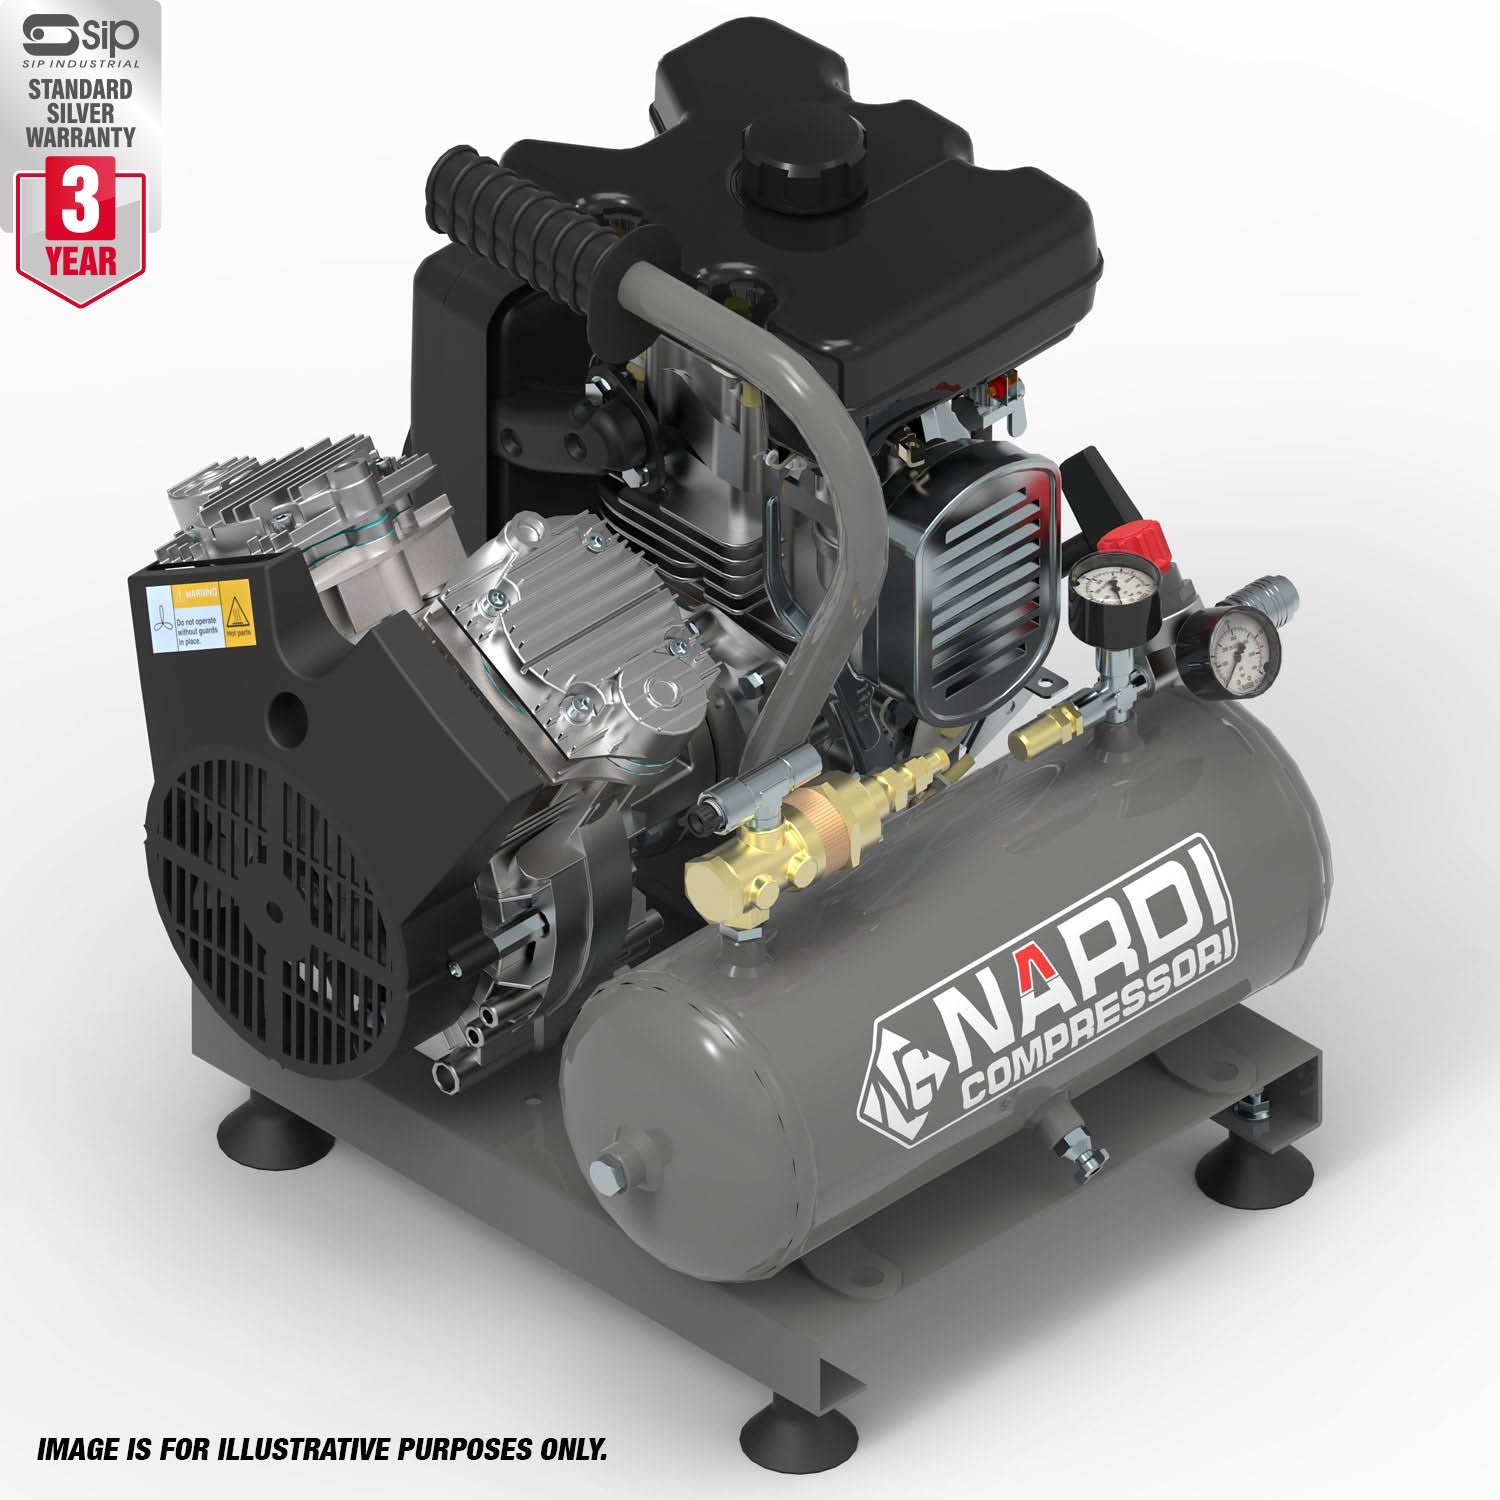 NARDI EXTREME 3 24v 7ltr Compressor